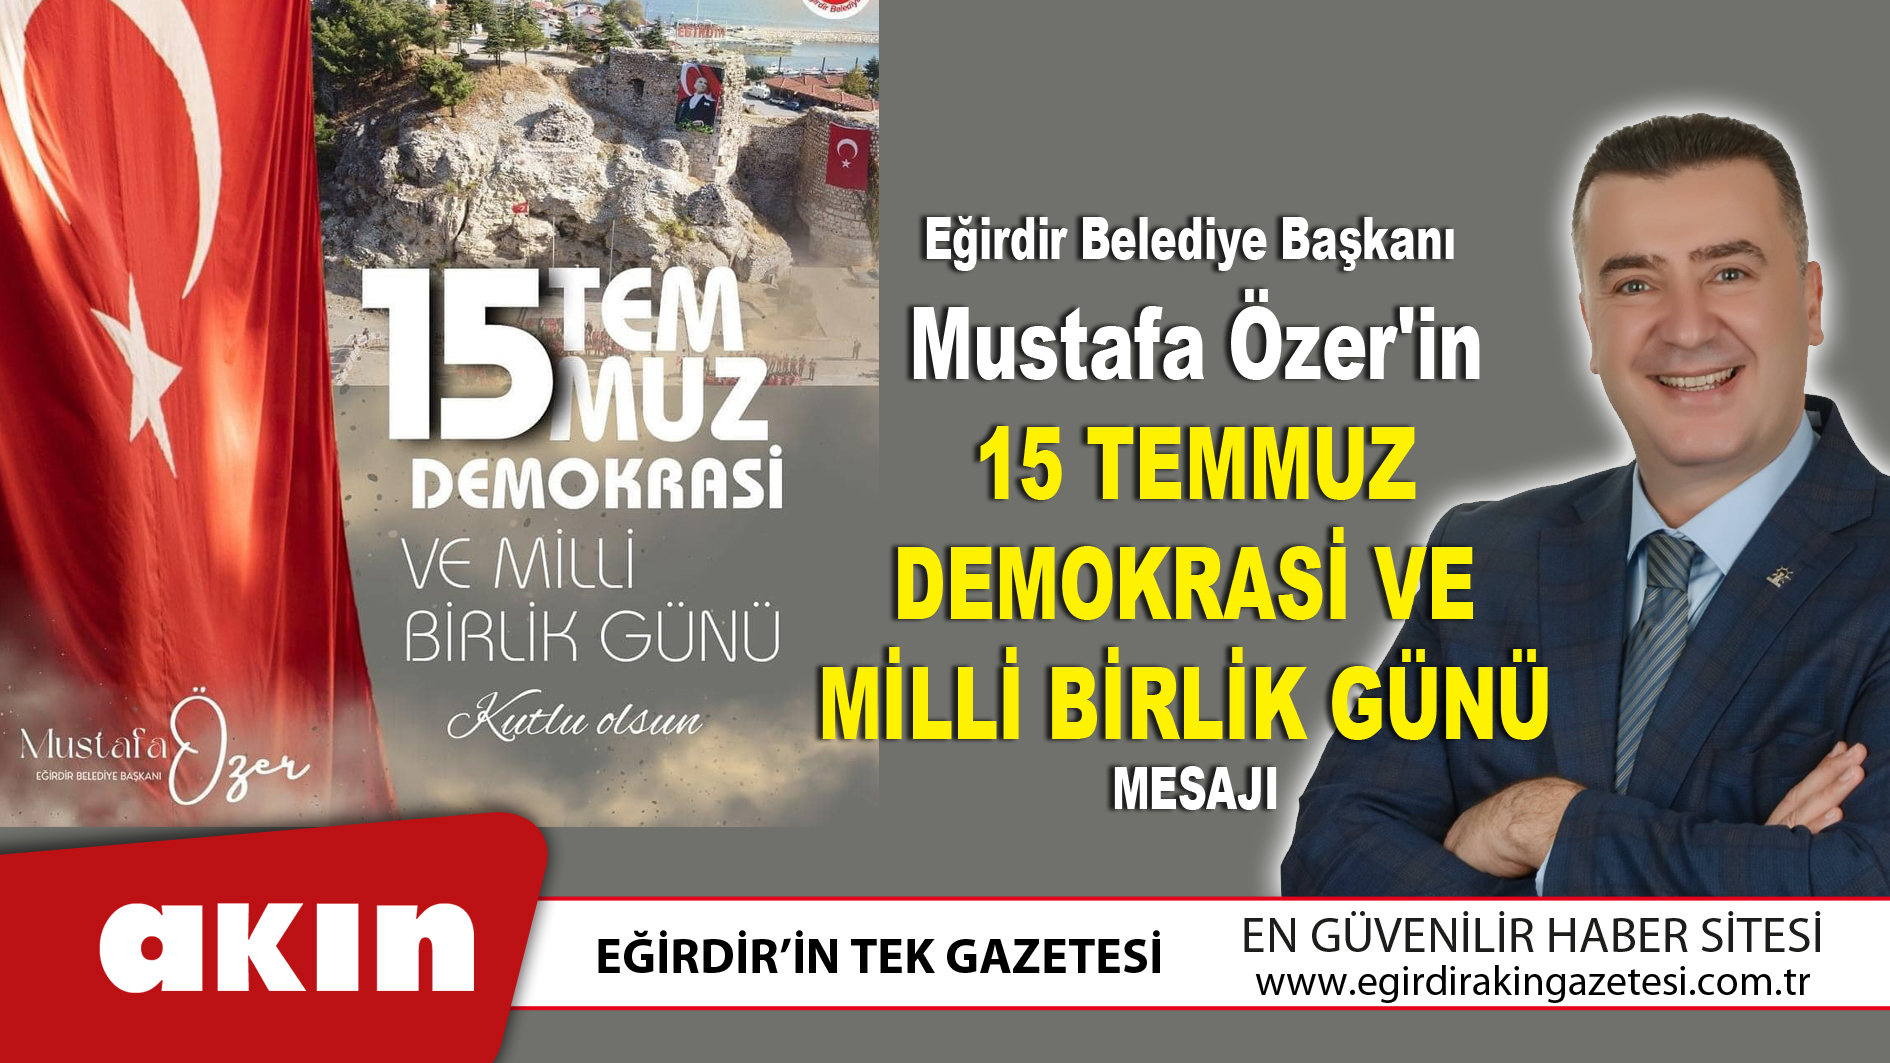 Eğirdir Belediye Başkanı Mustafa Özer'in 15 Temmuz Demokrasi Ve Milli Birlik Günü Mesajı